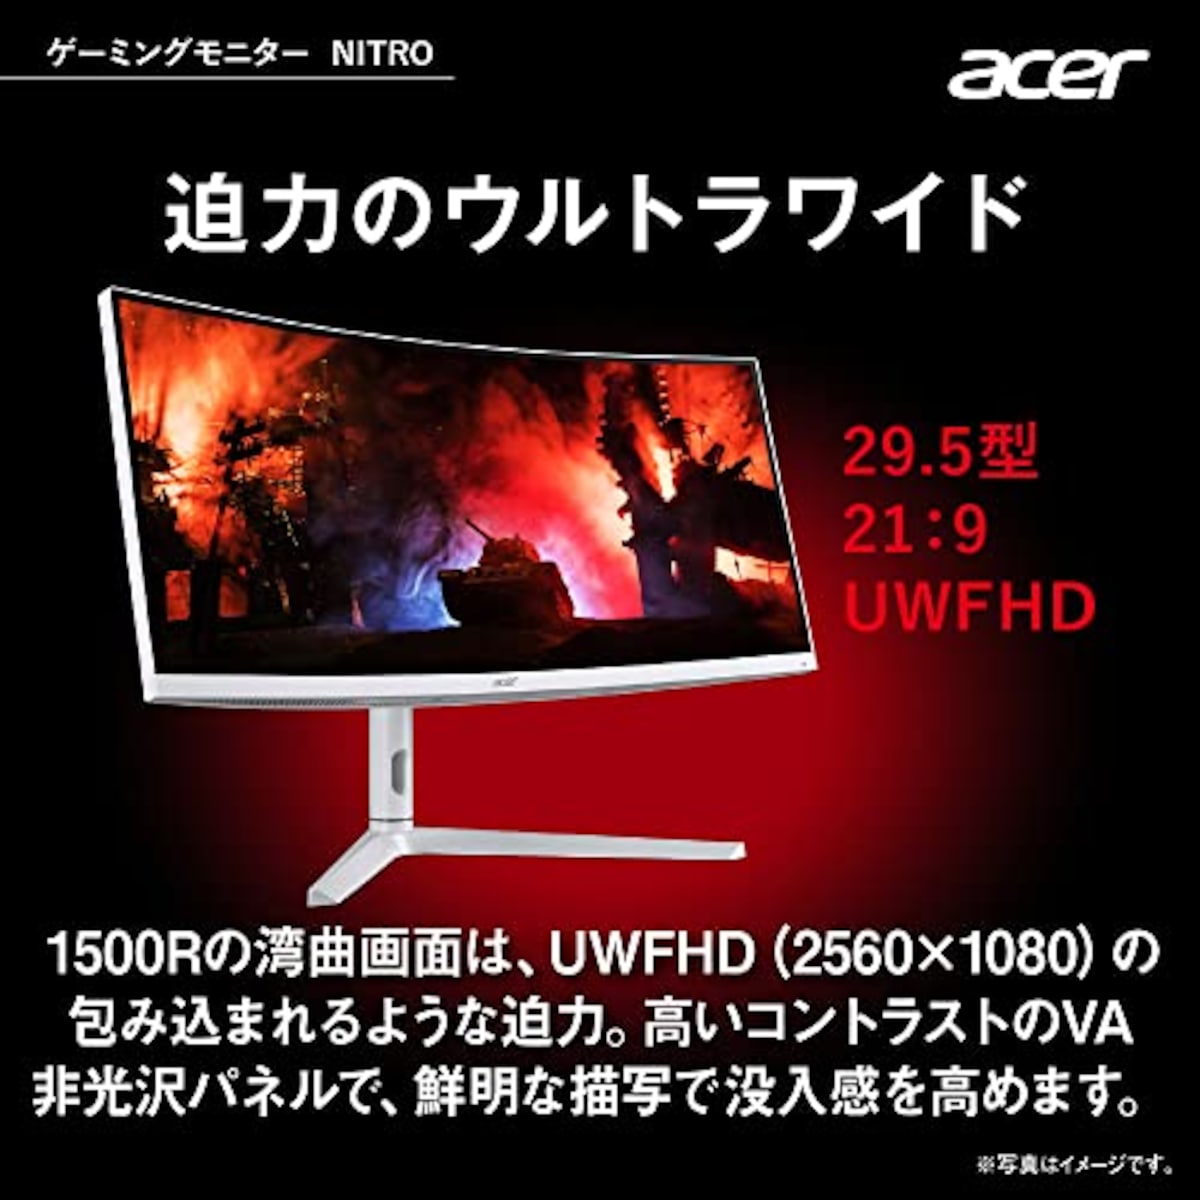  日本エイサー Acer ゲーミングモニター Nitro XZ306CXwmiiiphx 29.5インチ VA 非光沢 湾曲1500R UWFHD ウルトラワイド 1ms(VRB)200Hz(HDMI 180Hz) AMD FreeSync Premium スピーカー搭載 VESA DisplayHDR 400 広い視野角178° VESAマウント対応 高さ調整 ピボット スイベル チルト画像2 